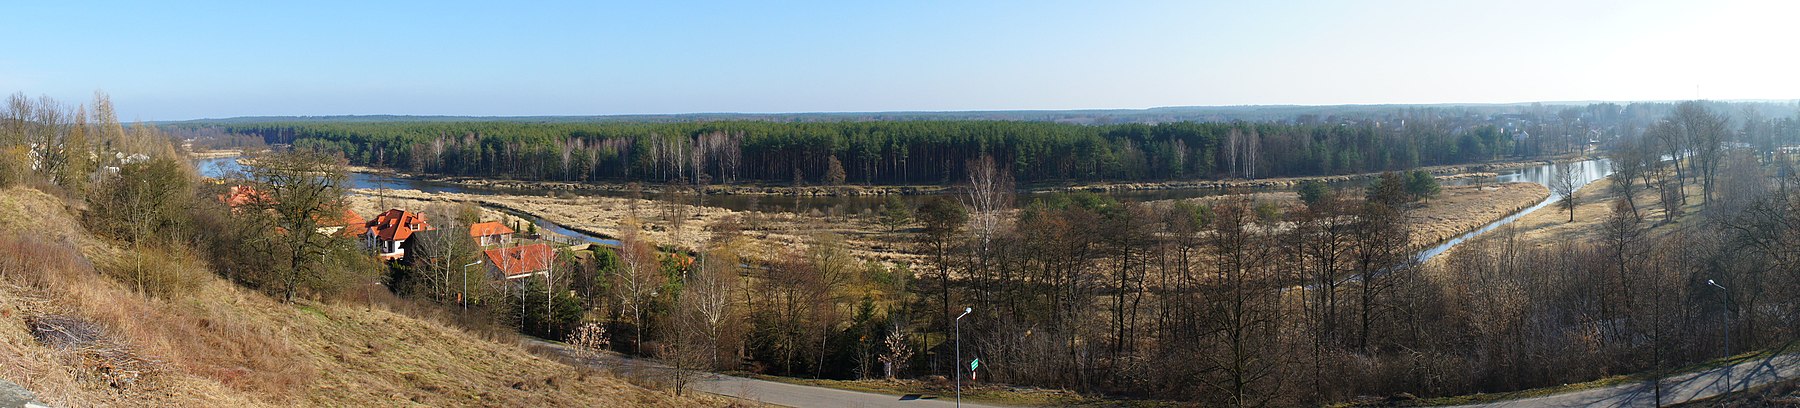 Commune of Inowłódz, Poland - Panoramio (6) .jpg